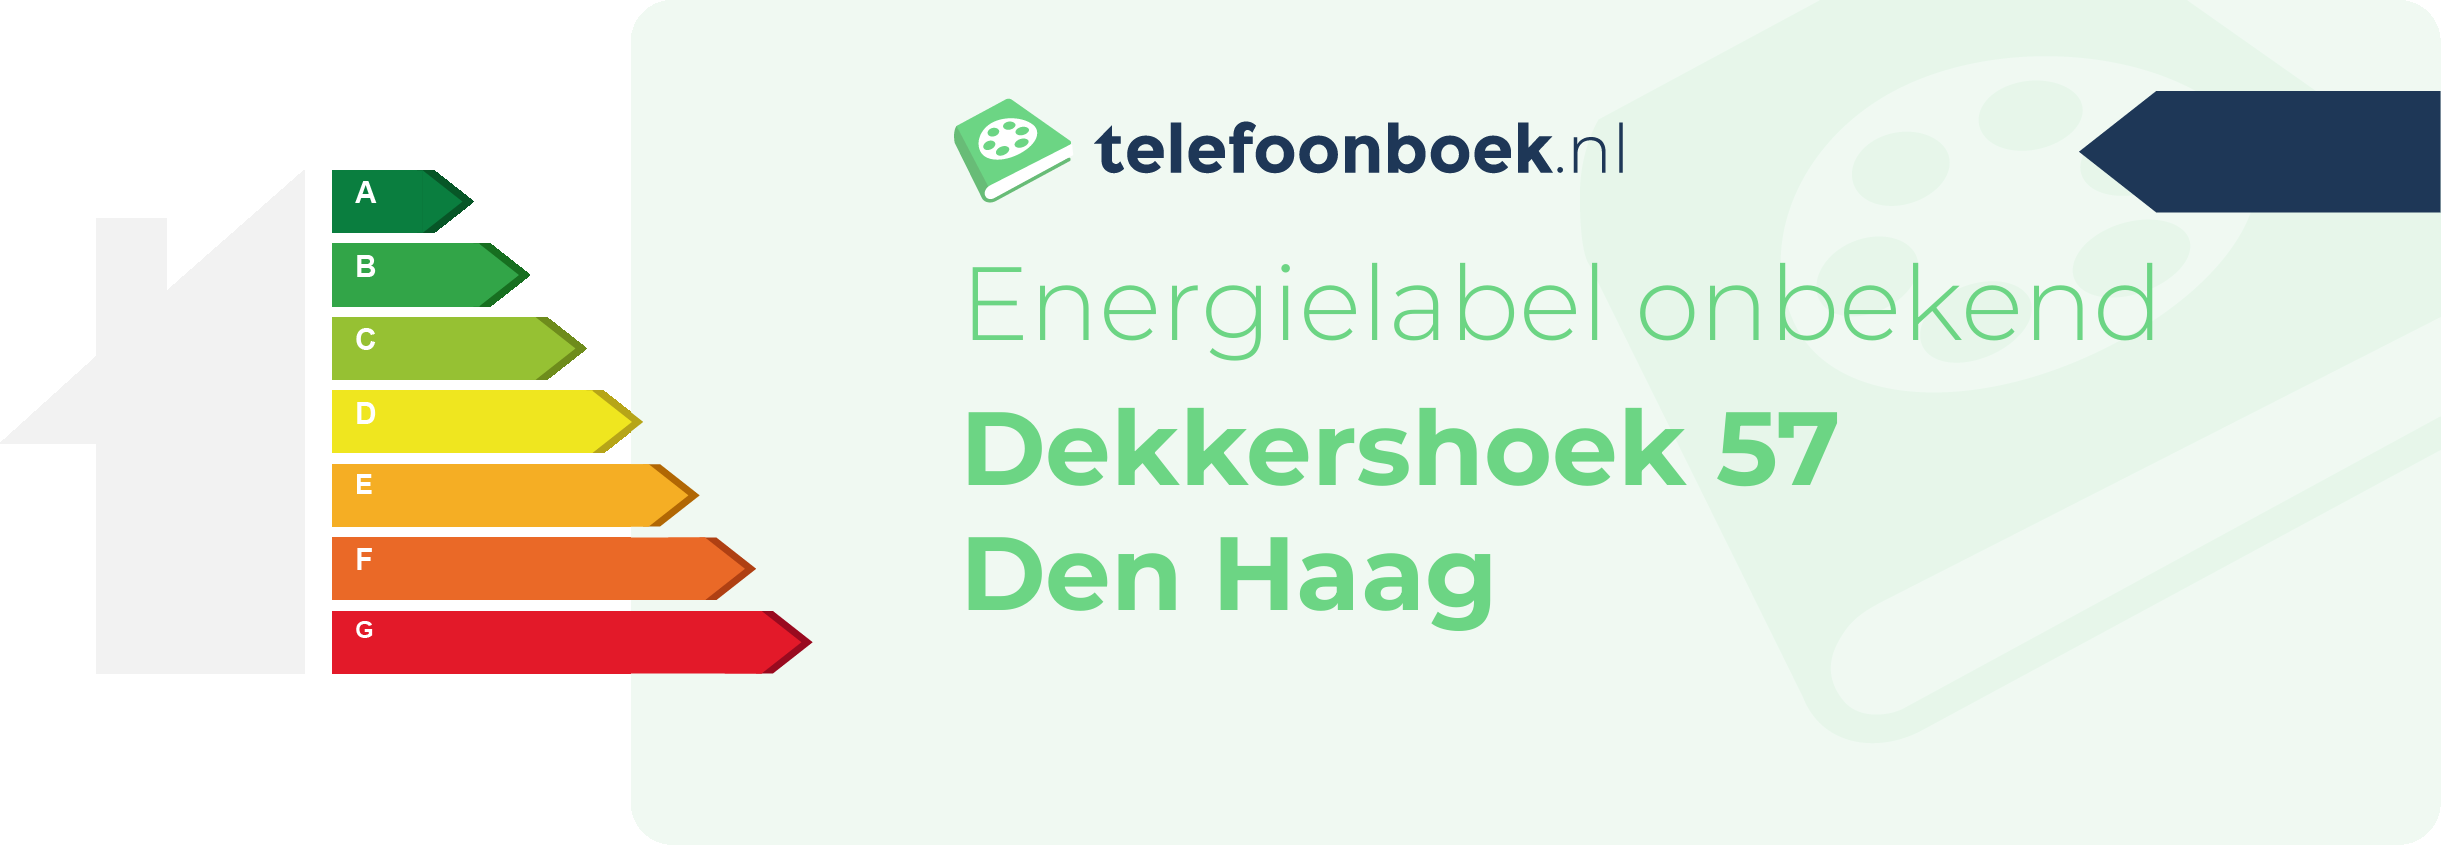 Energielabel Dekkershoek 57 Den Haag